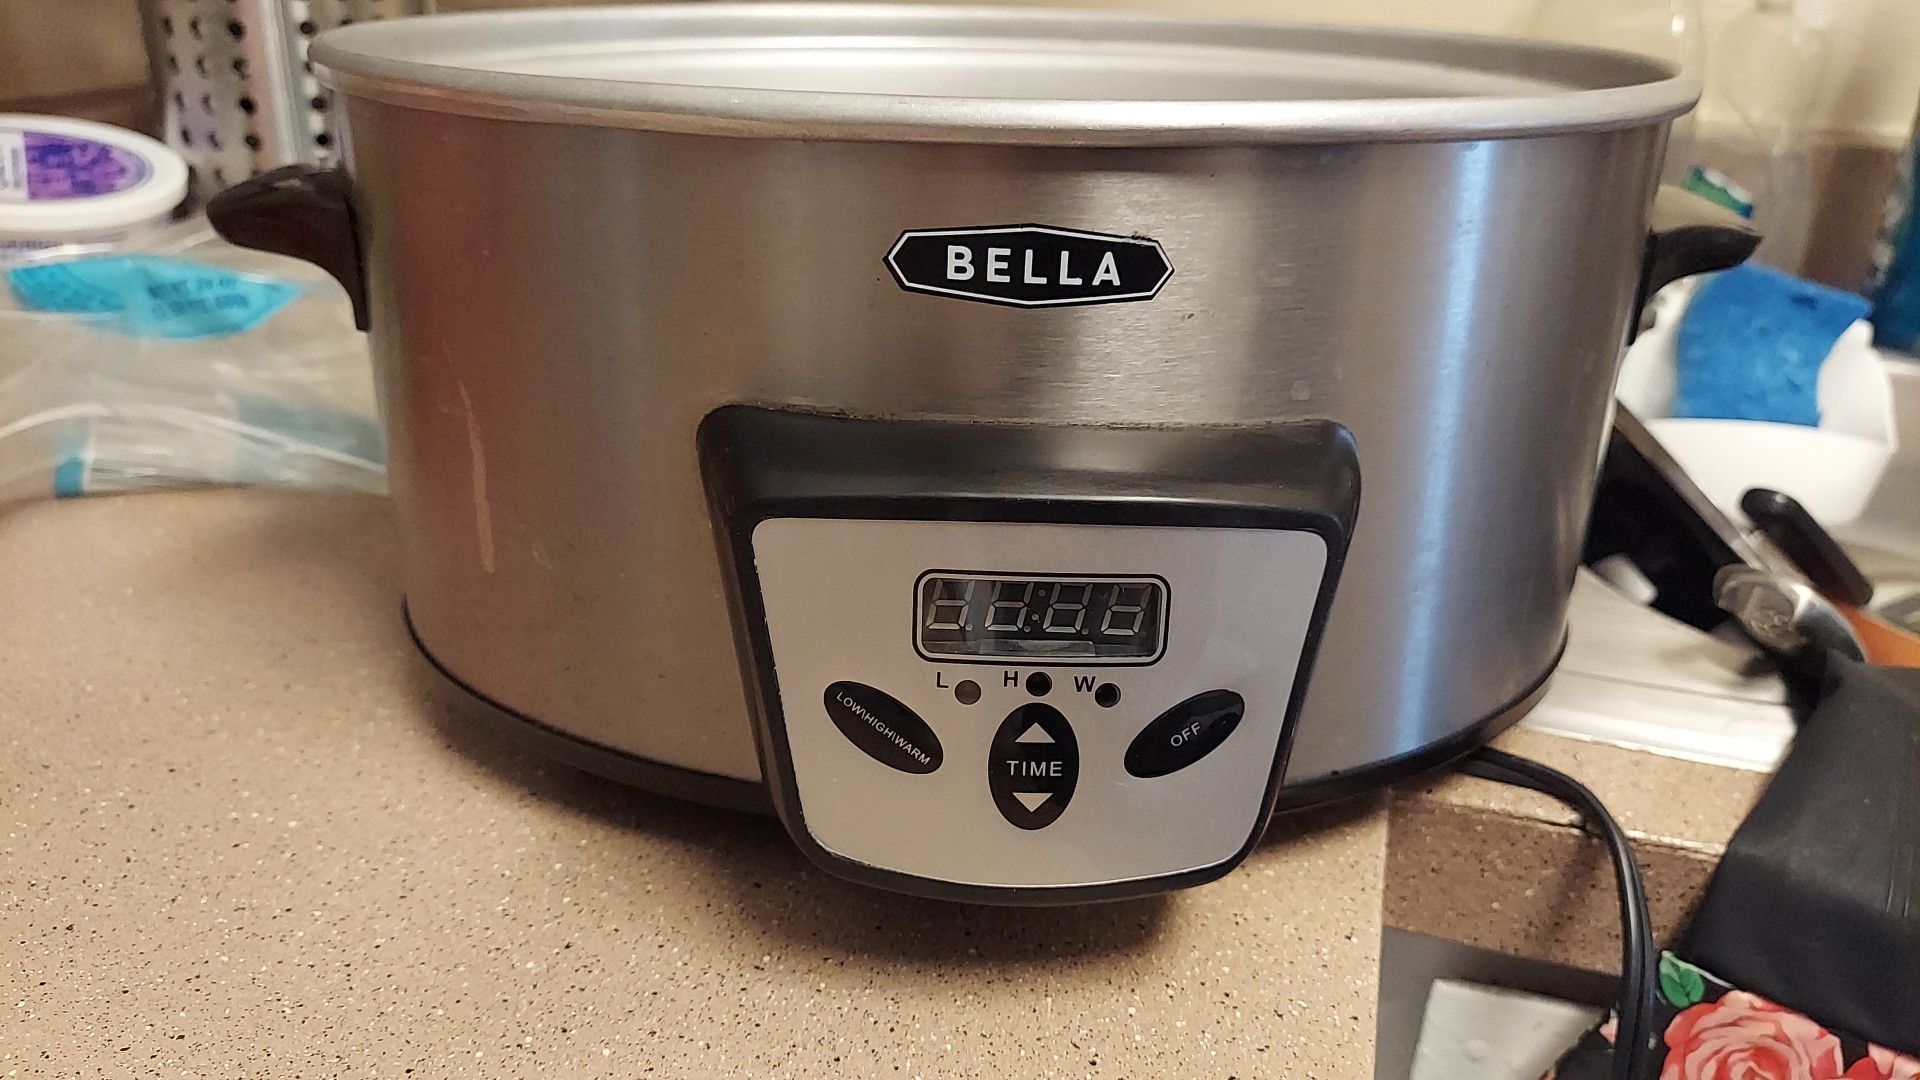 Bella, Crock Pot